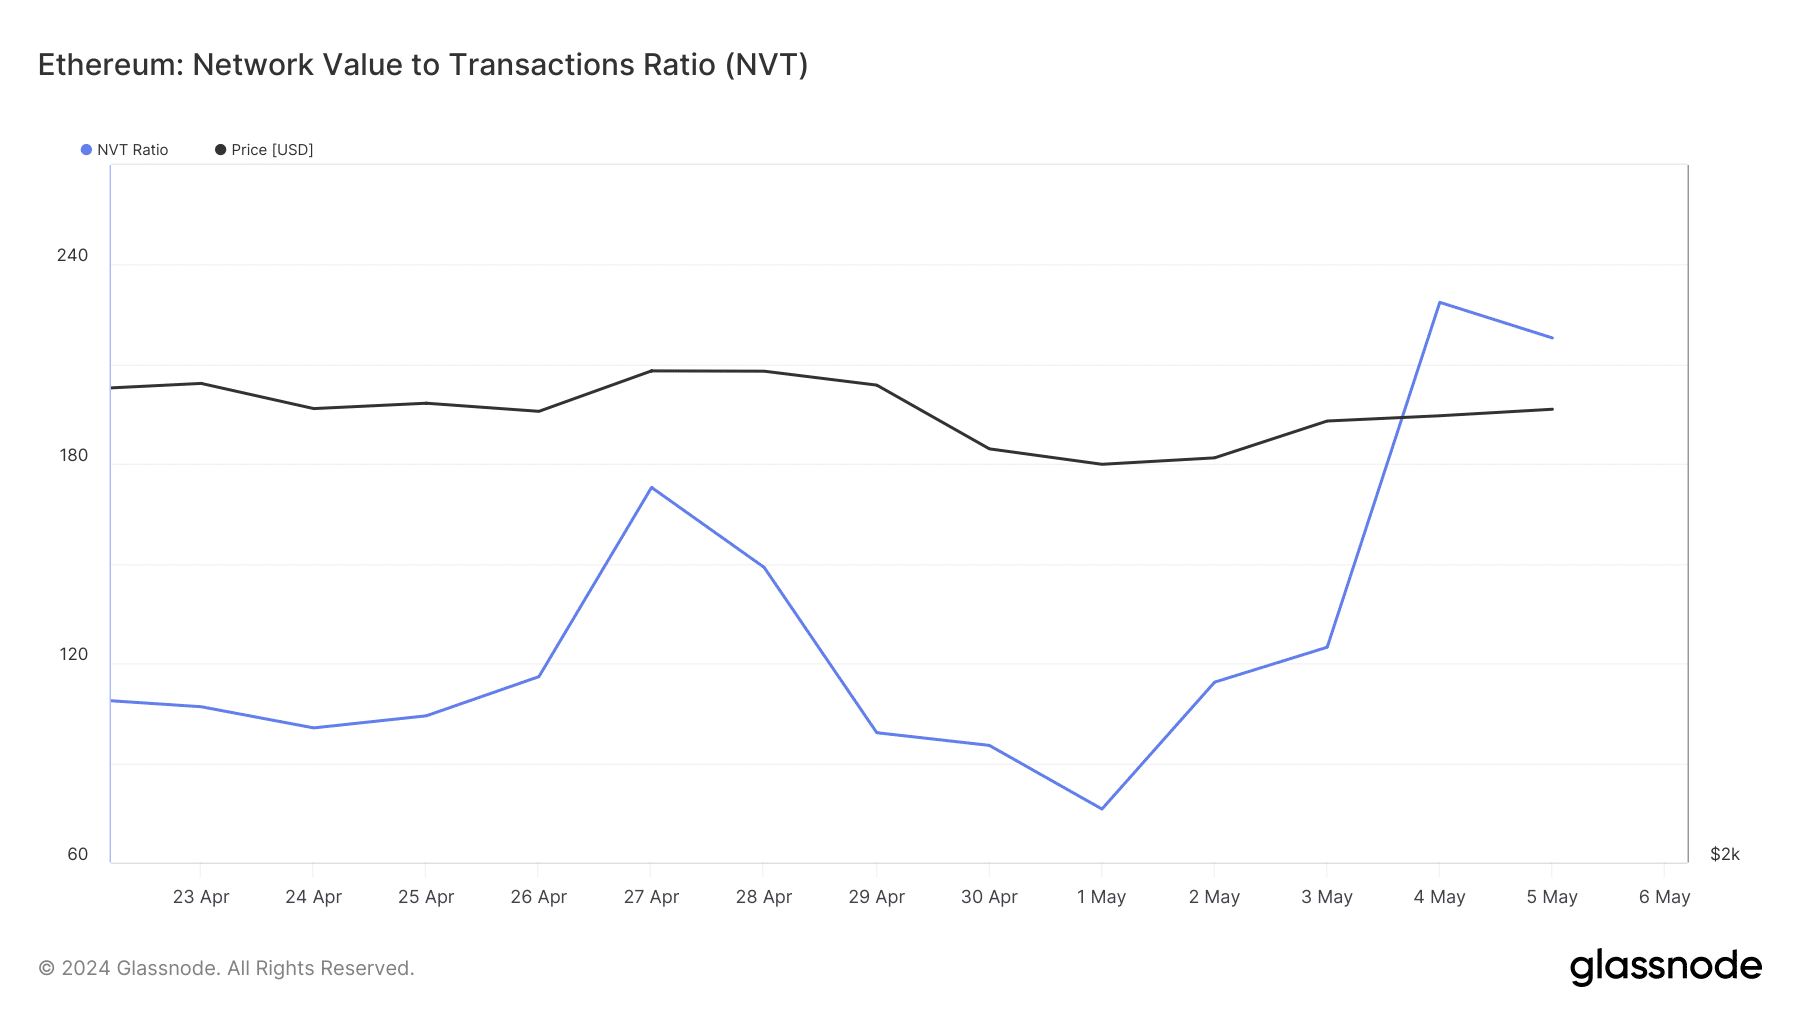 El ratio NVT de Ethereum cayó